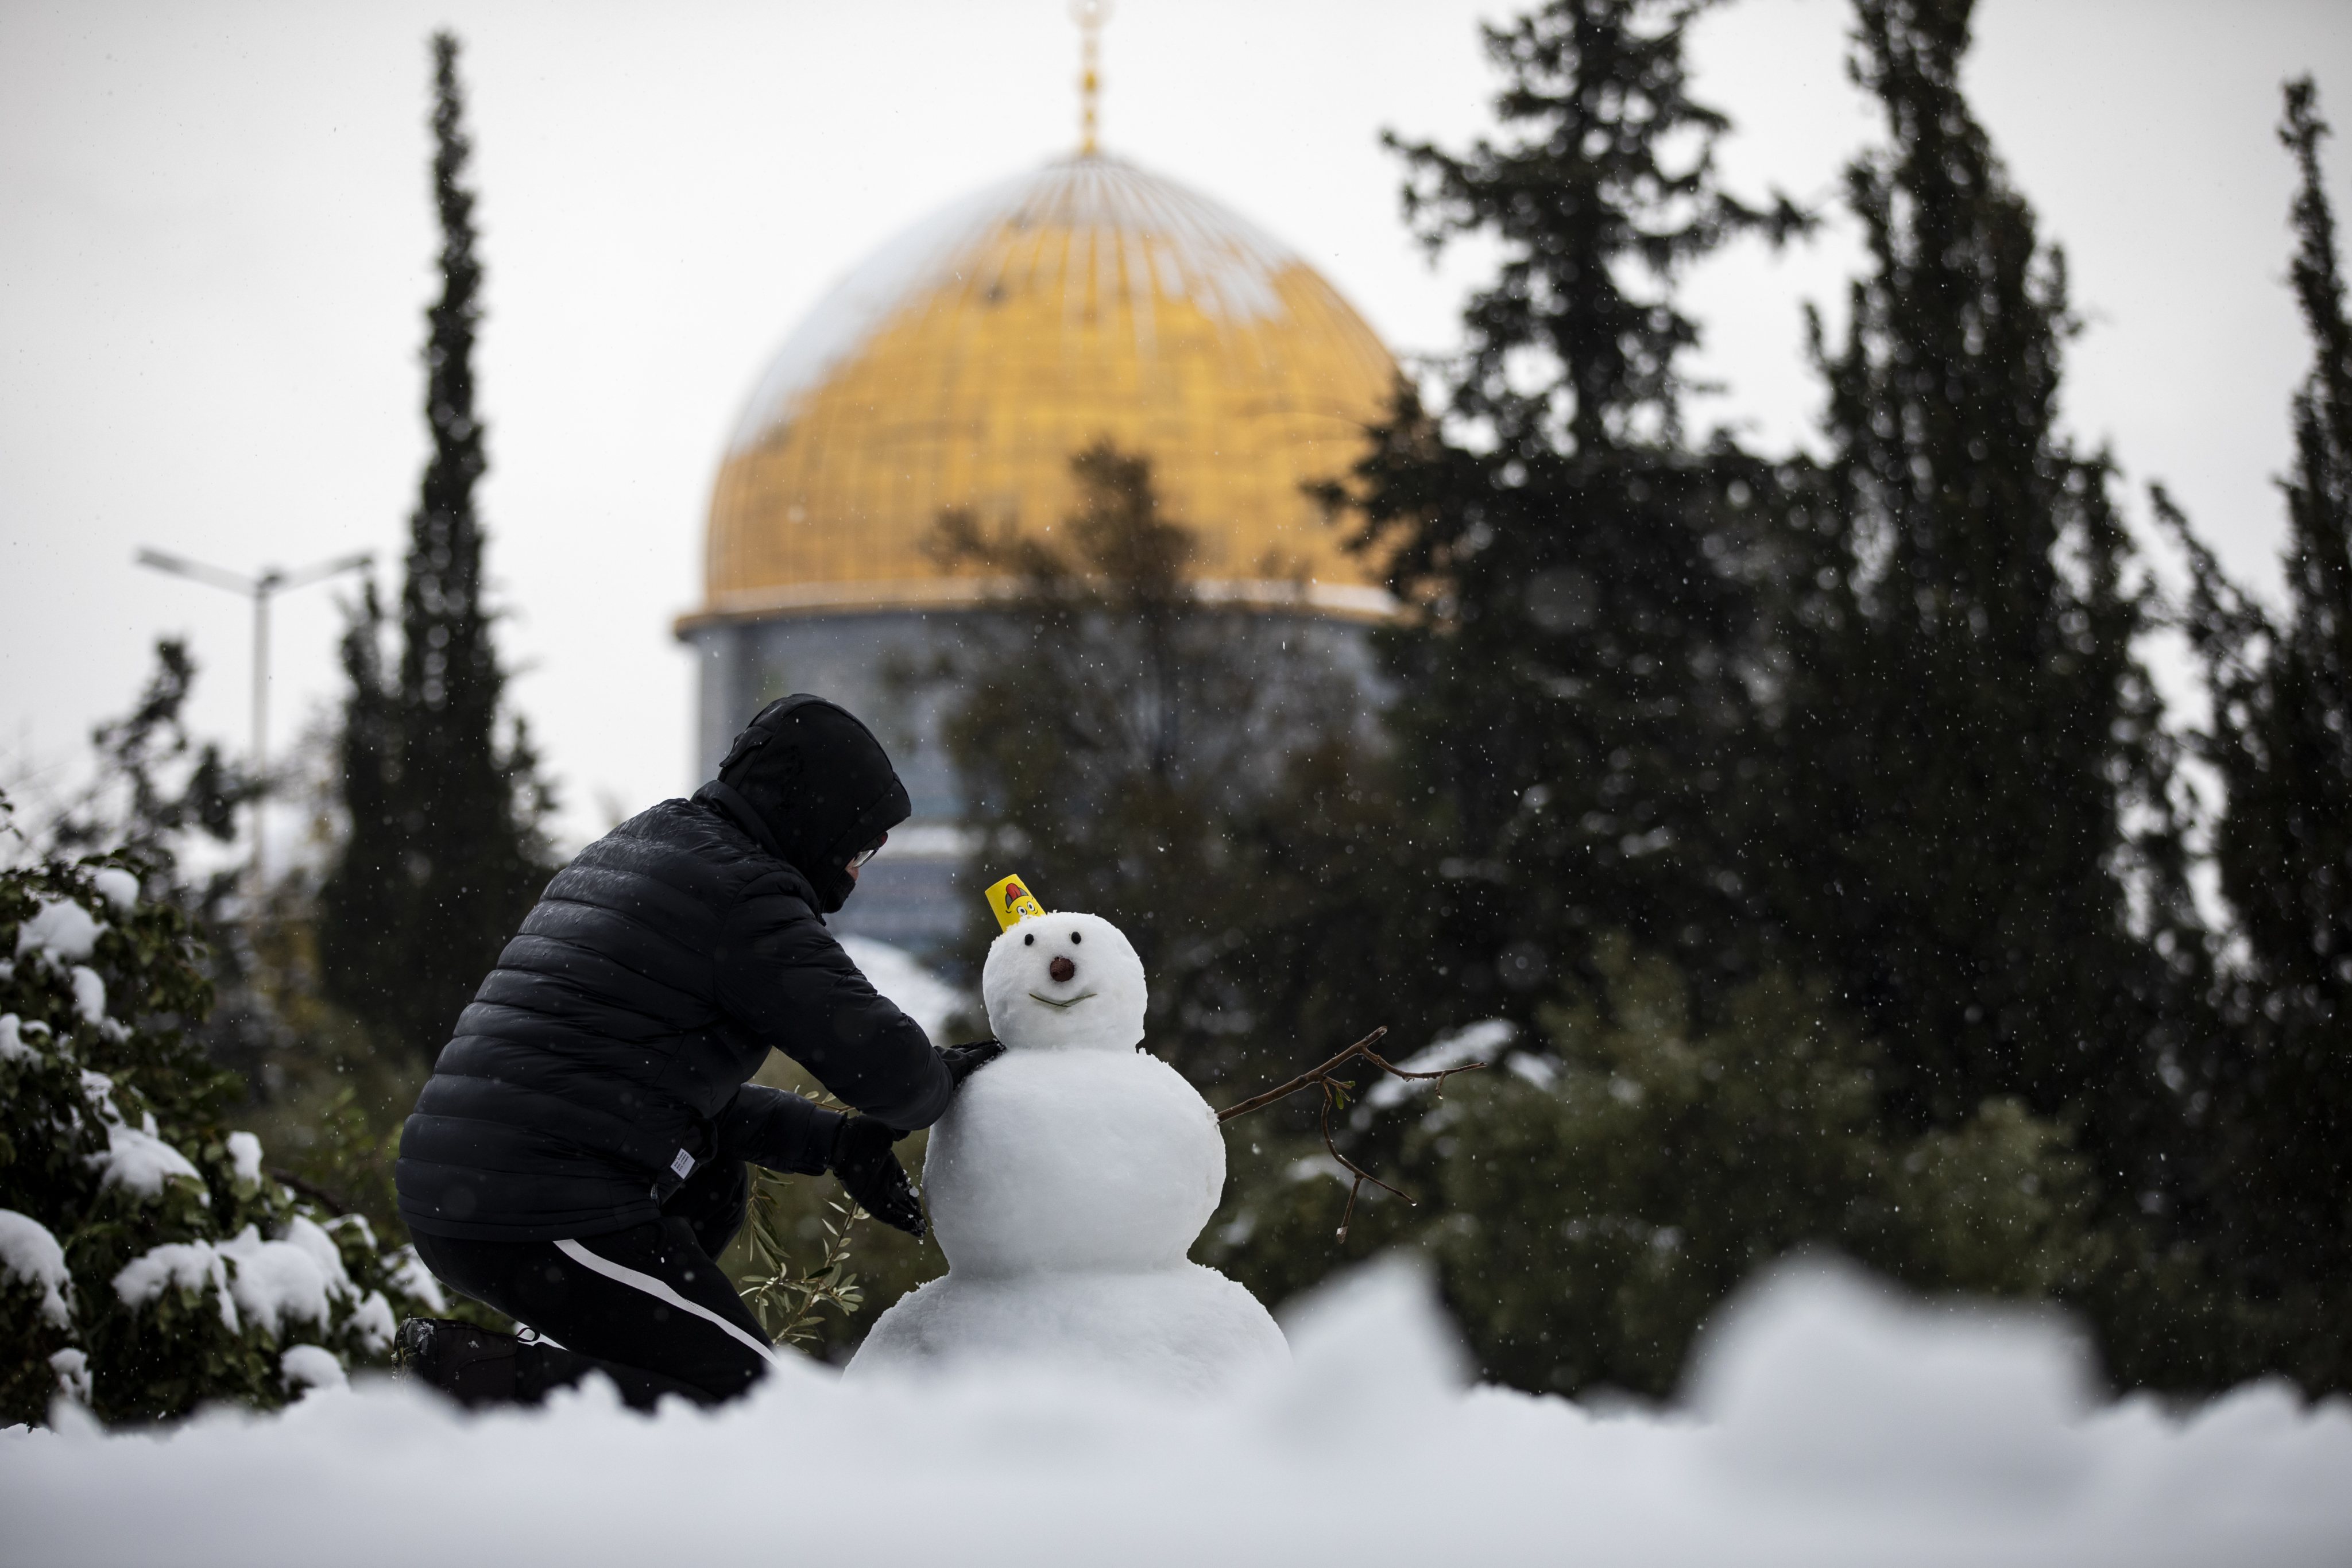 Jerusalém acordou esta quinta-feira coberta de neve, consequência da passagem da tempestade Elpida, que já afetou cidades como Atenas e Istambul